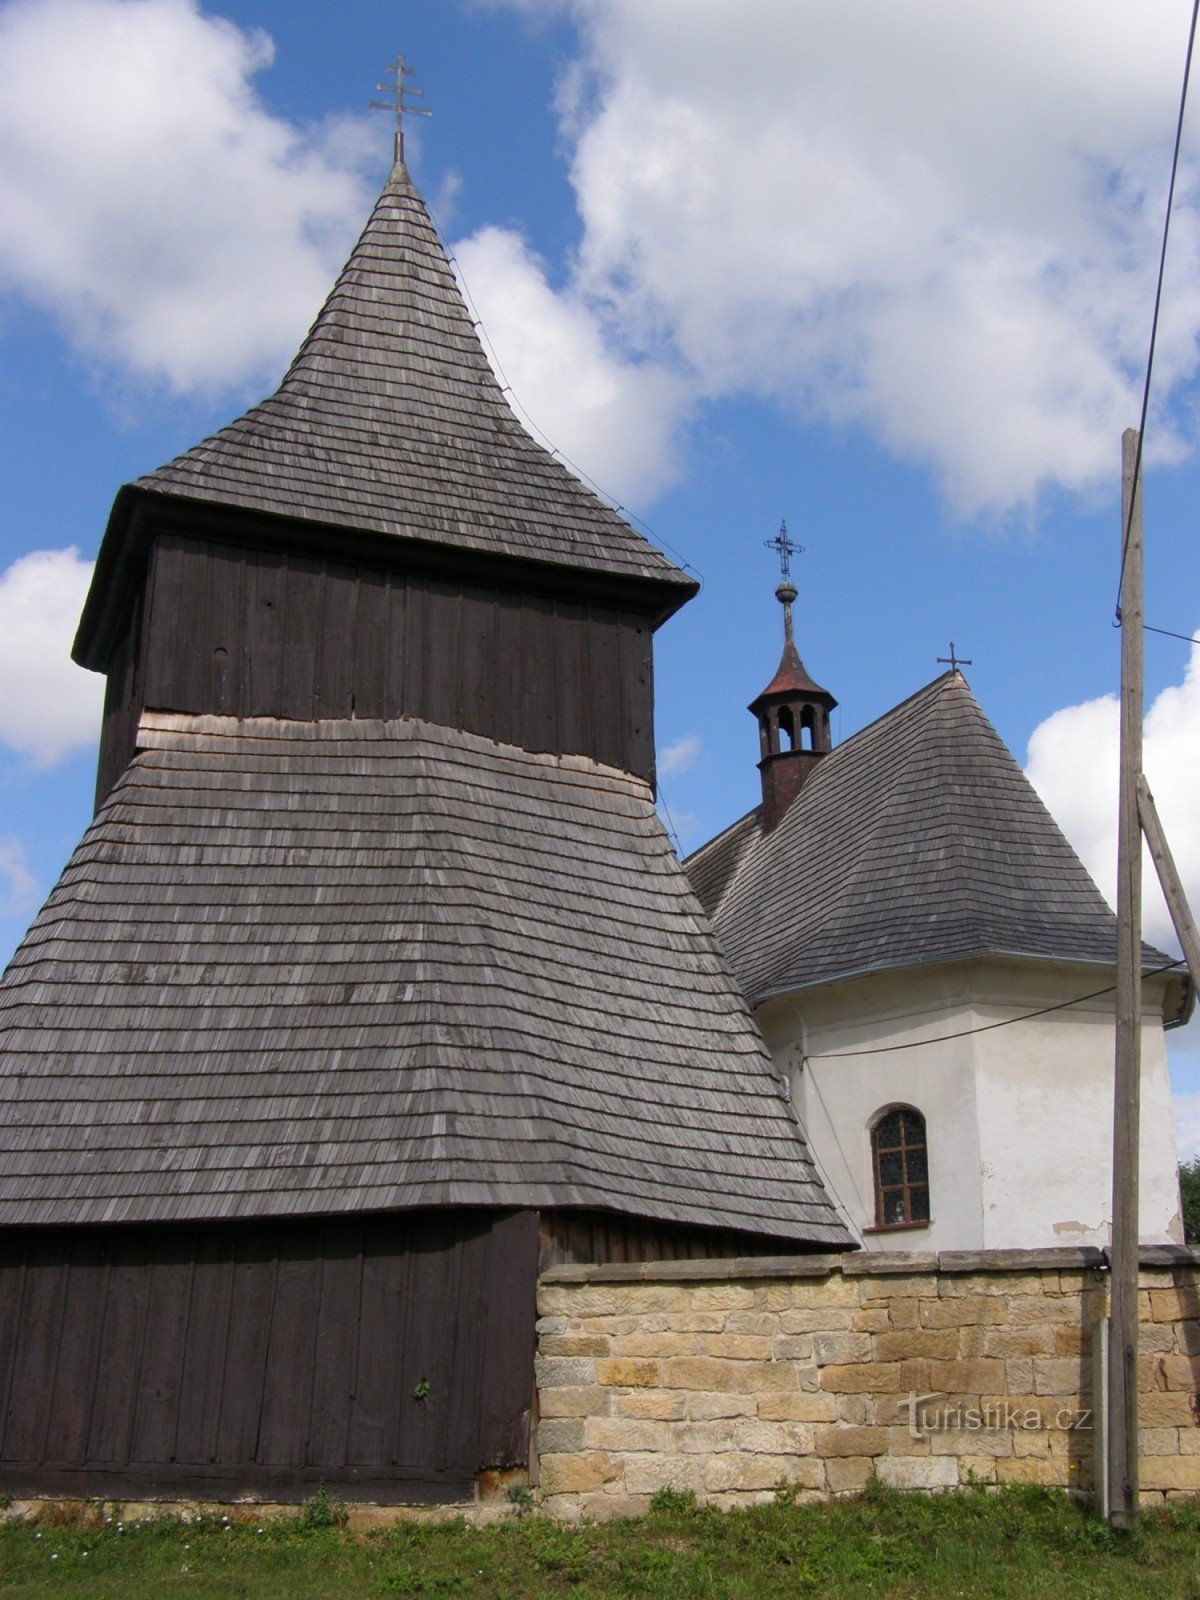 Vysočany - nhà thờ gỗ St. Chợ có tháp chuông bằng gỗ